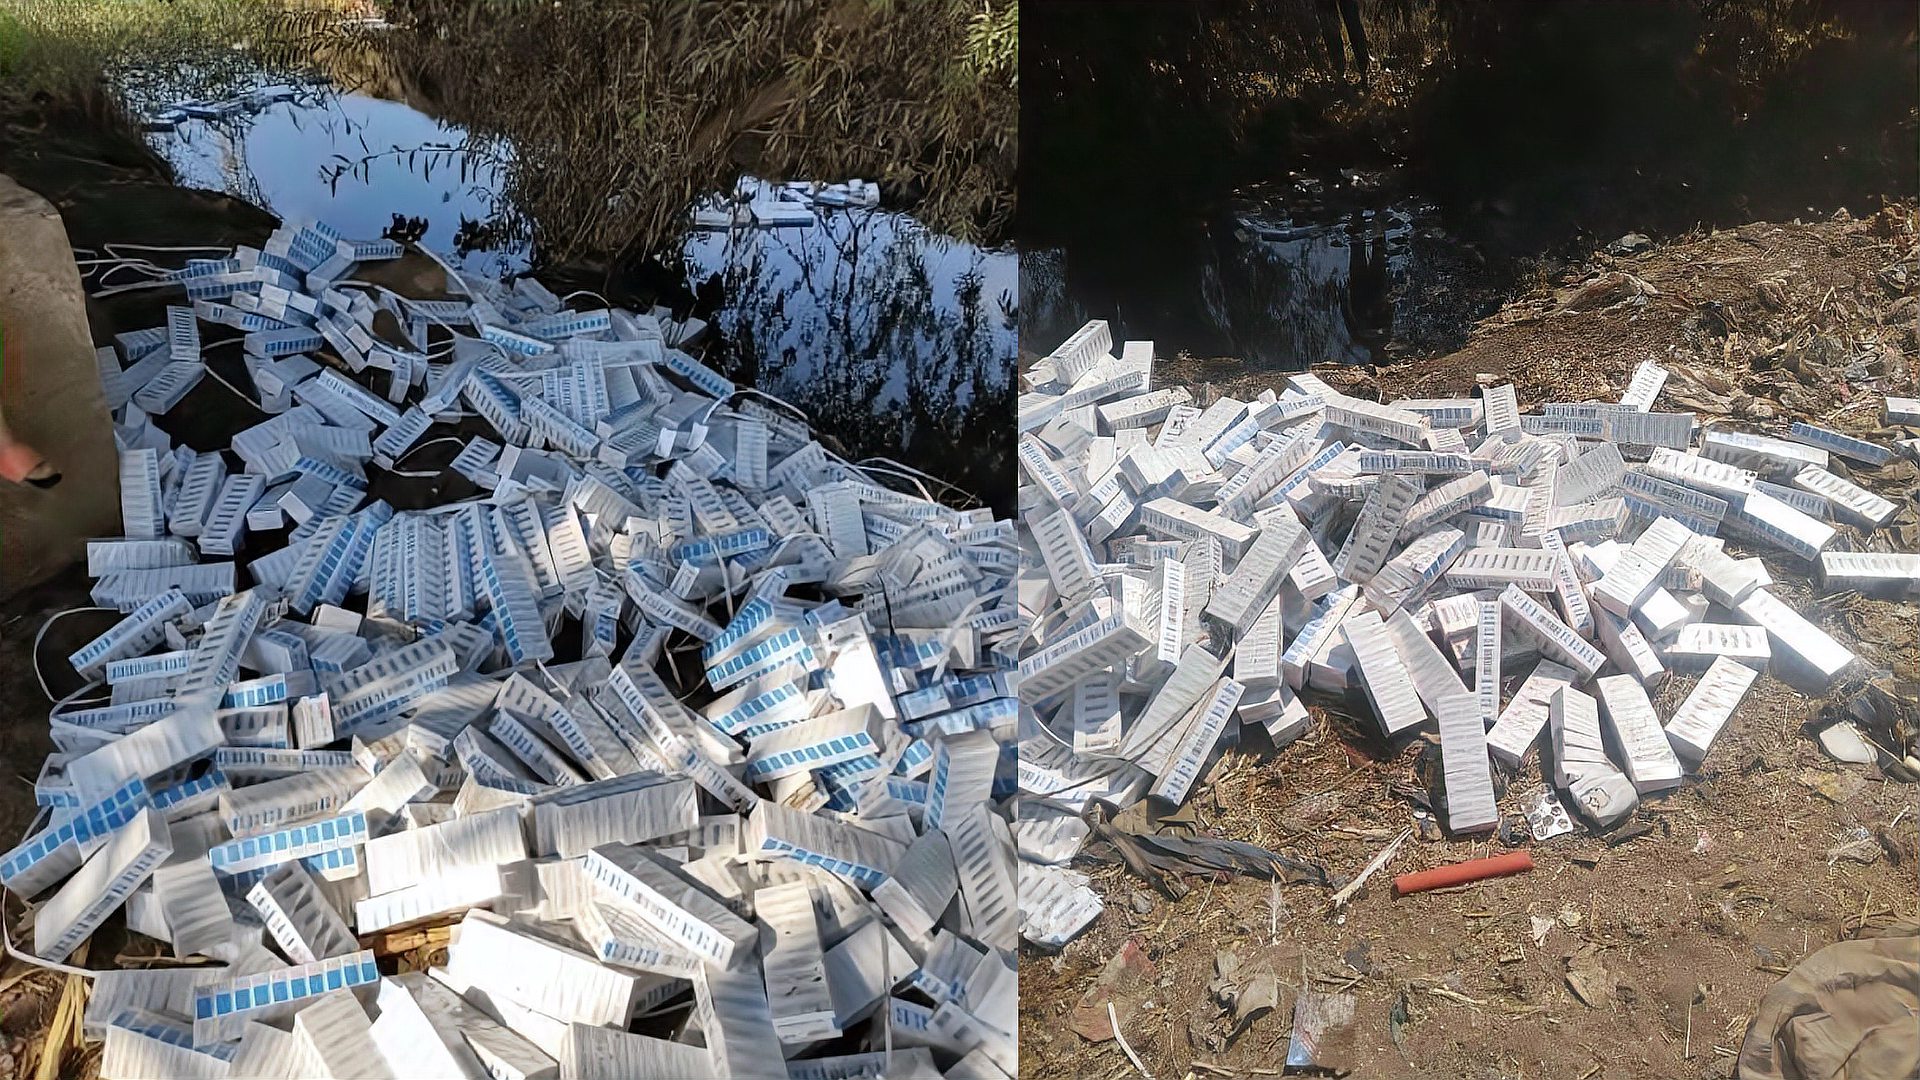 上万盒中国新冠疫苗丢失，居民在污水沟发现成堆包装盒，3人被捕